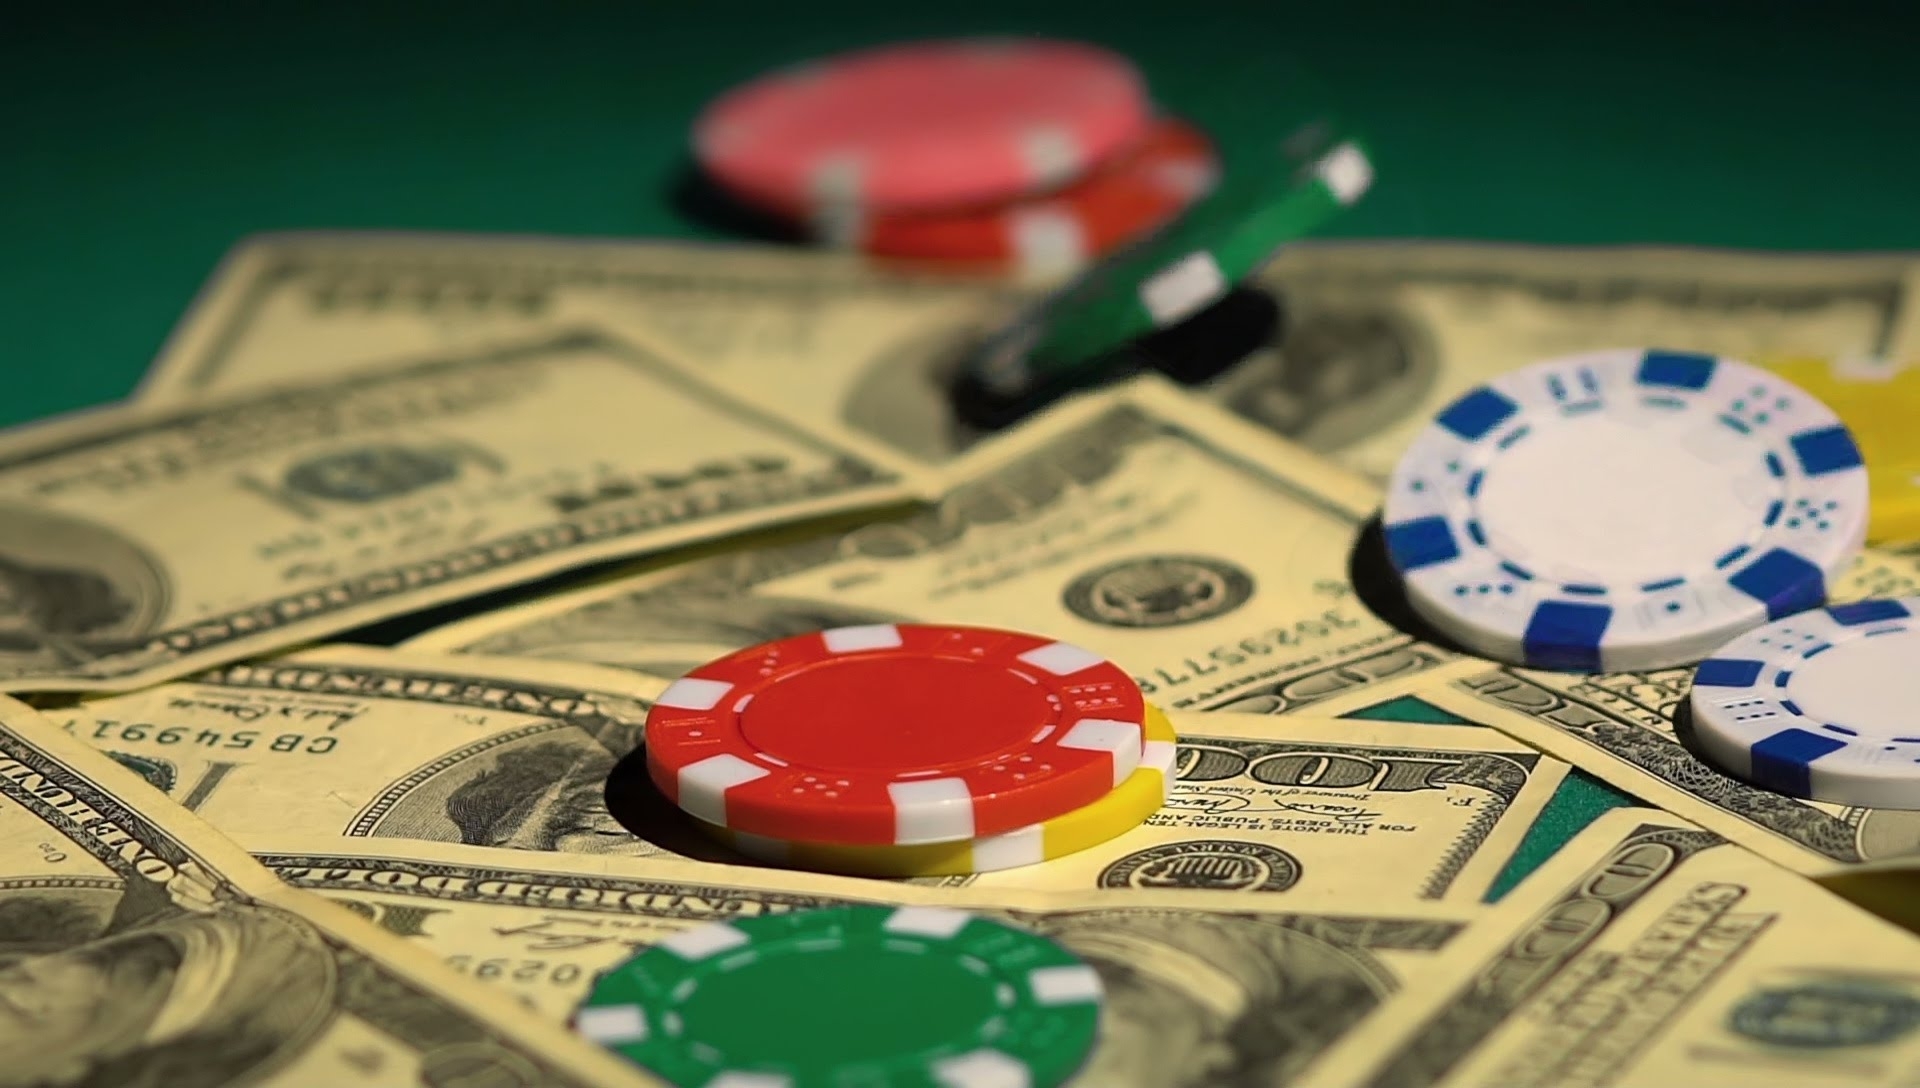 Азартные игры на деньги games money pays. Покер на деньги. Доход казино. Отмывание денег в казино. Денежные фишки для азартных игр.